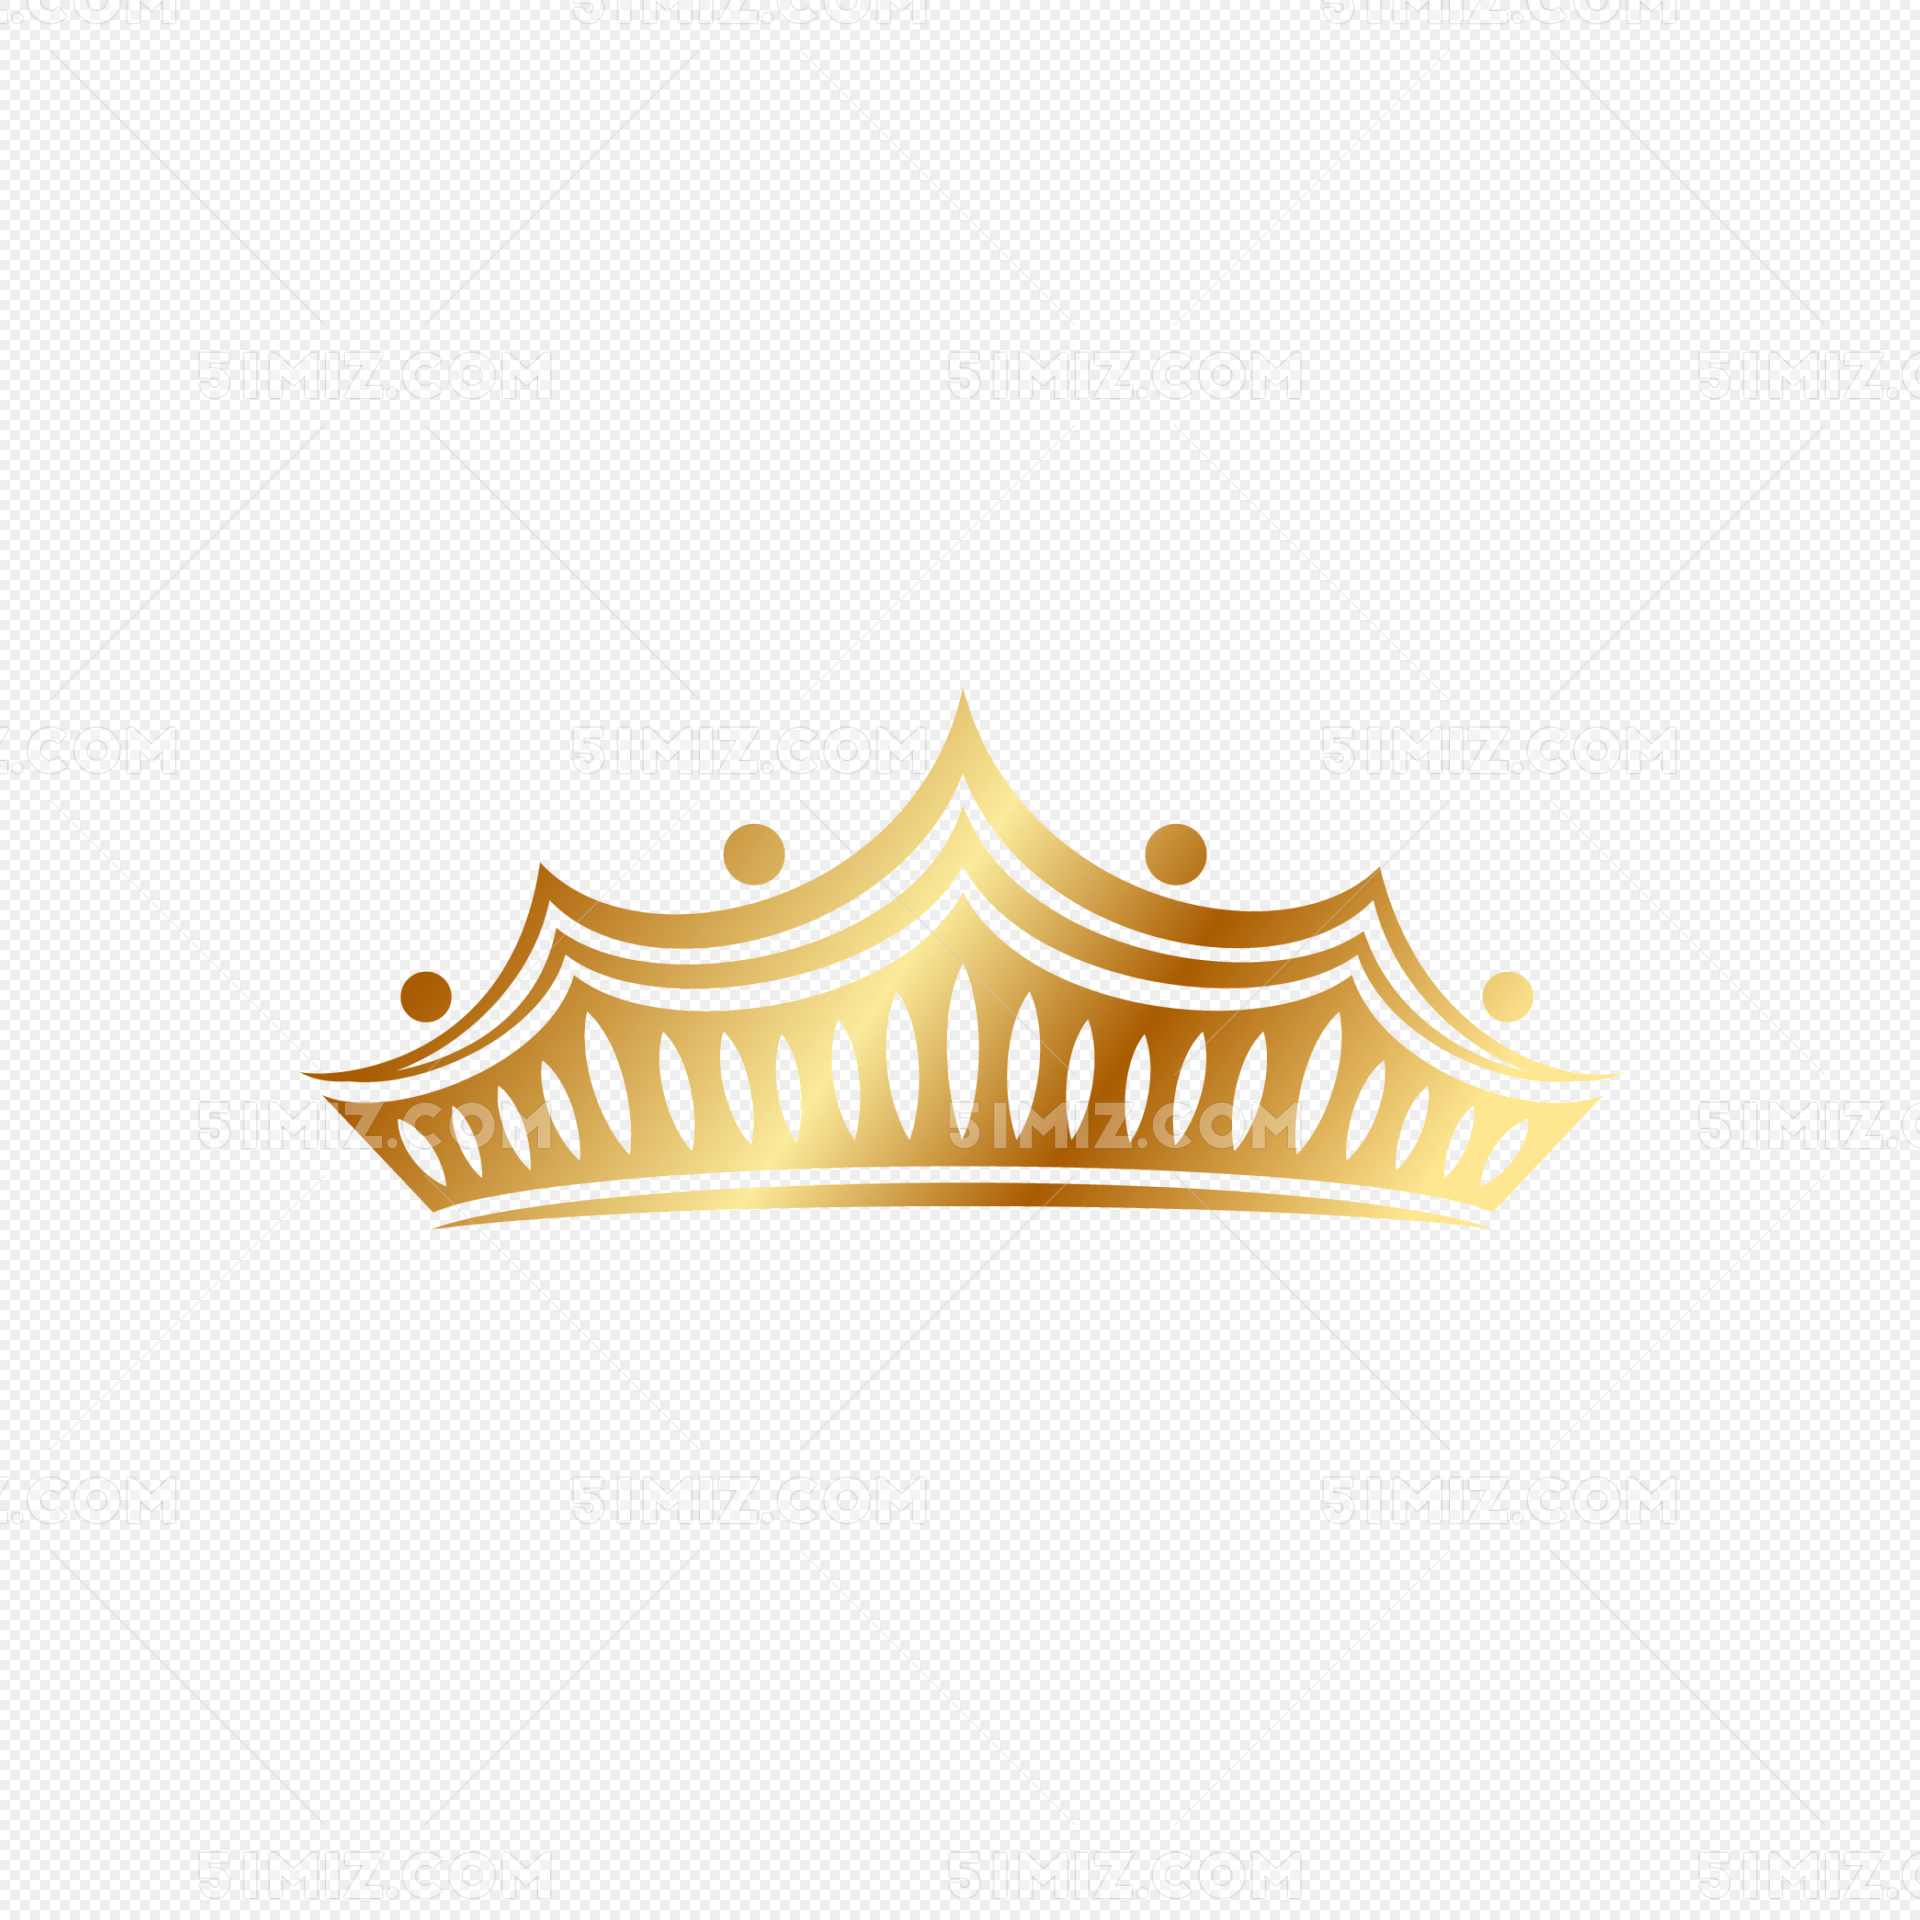 皇冠AI圖案素材免費下載 - 尺寸6250 × 6250px - 圖形ID401290870 - Lovepik